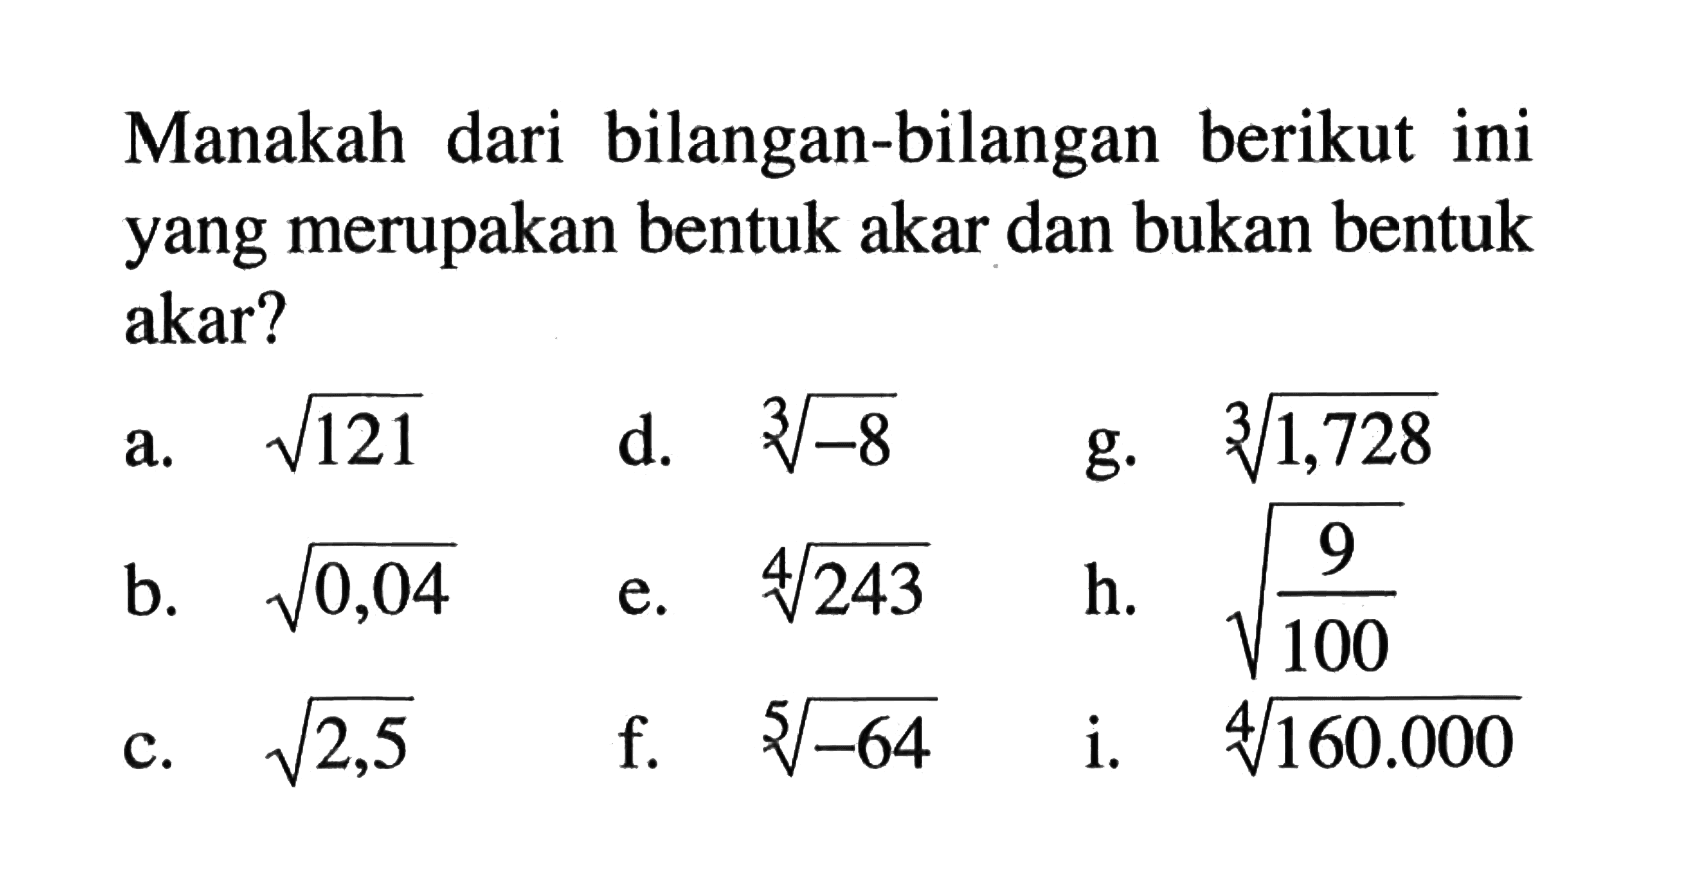 Manakah dari bilangan-bilangan berikut ini yang merupakan bentuk akar dan bukan bentuk akar? a. akar(121) b. akar(0,04) c. akar(2,5) d. (-8)^(1/3) e. (243)^(1/4) f. (-64)^(1/5) g. (1,728)^(1/3) h. akar(9/100) i (160.000)^(1/4)